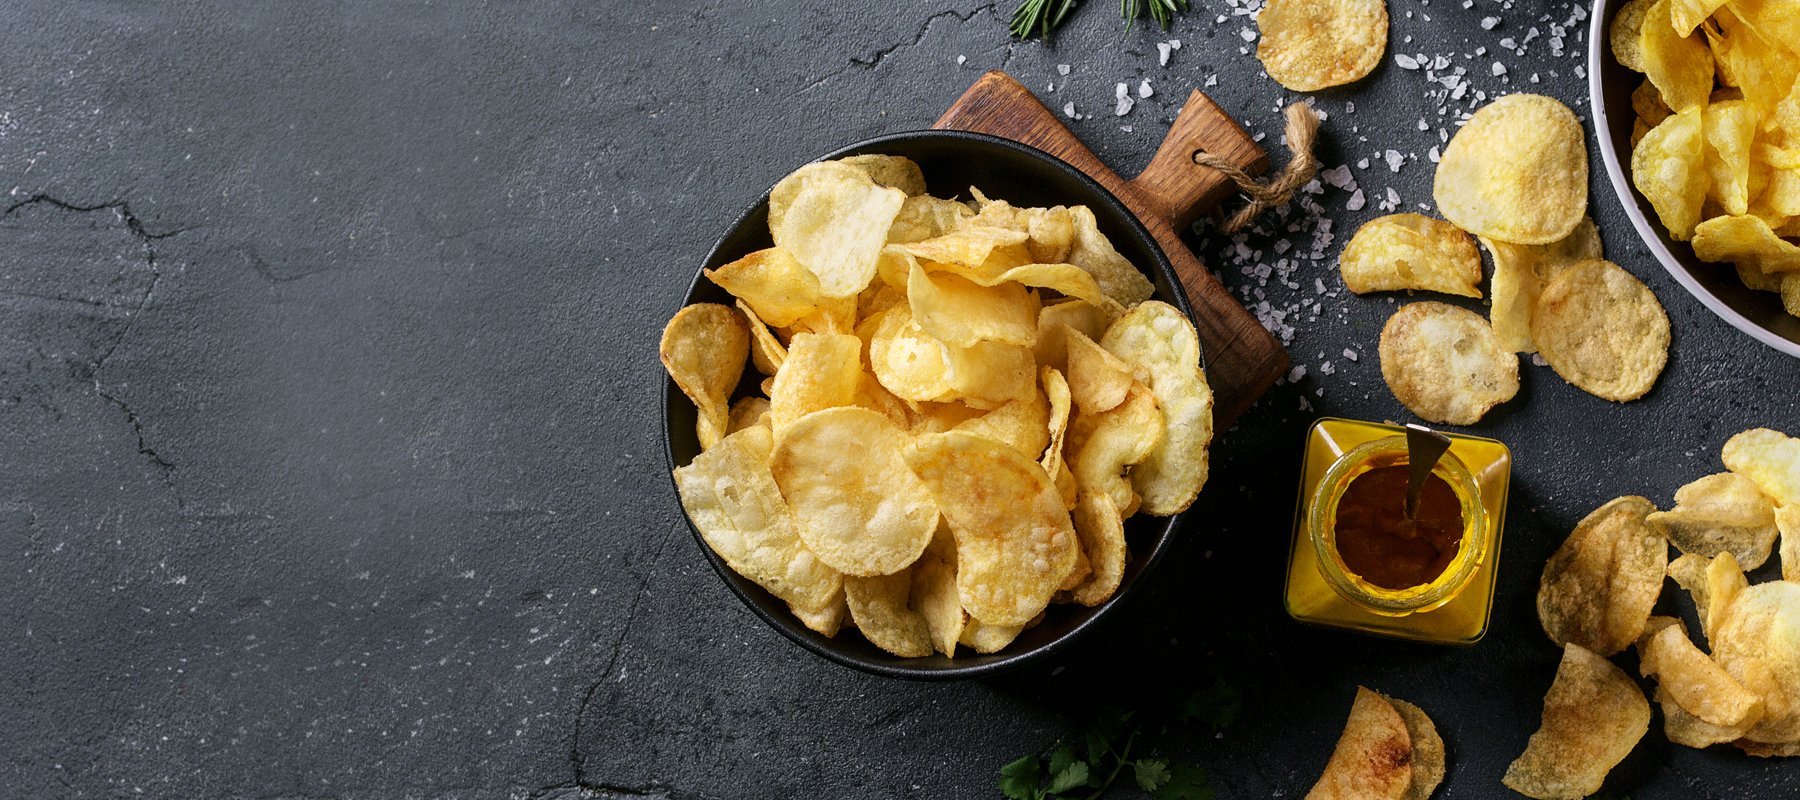 Crisps & Chips | Calia Australia Pty Ltd